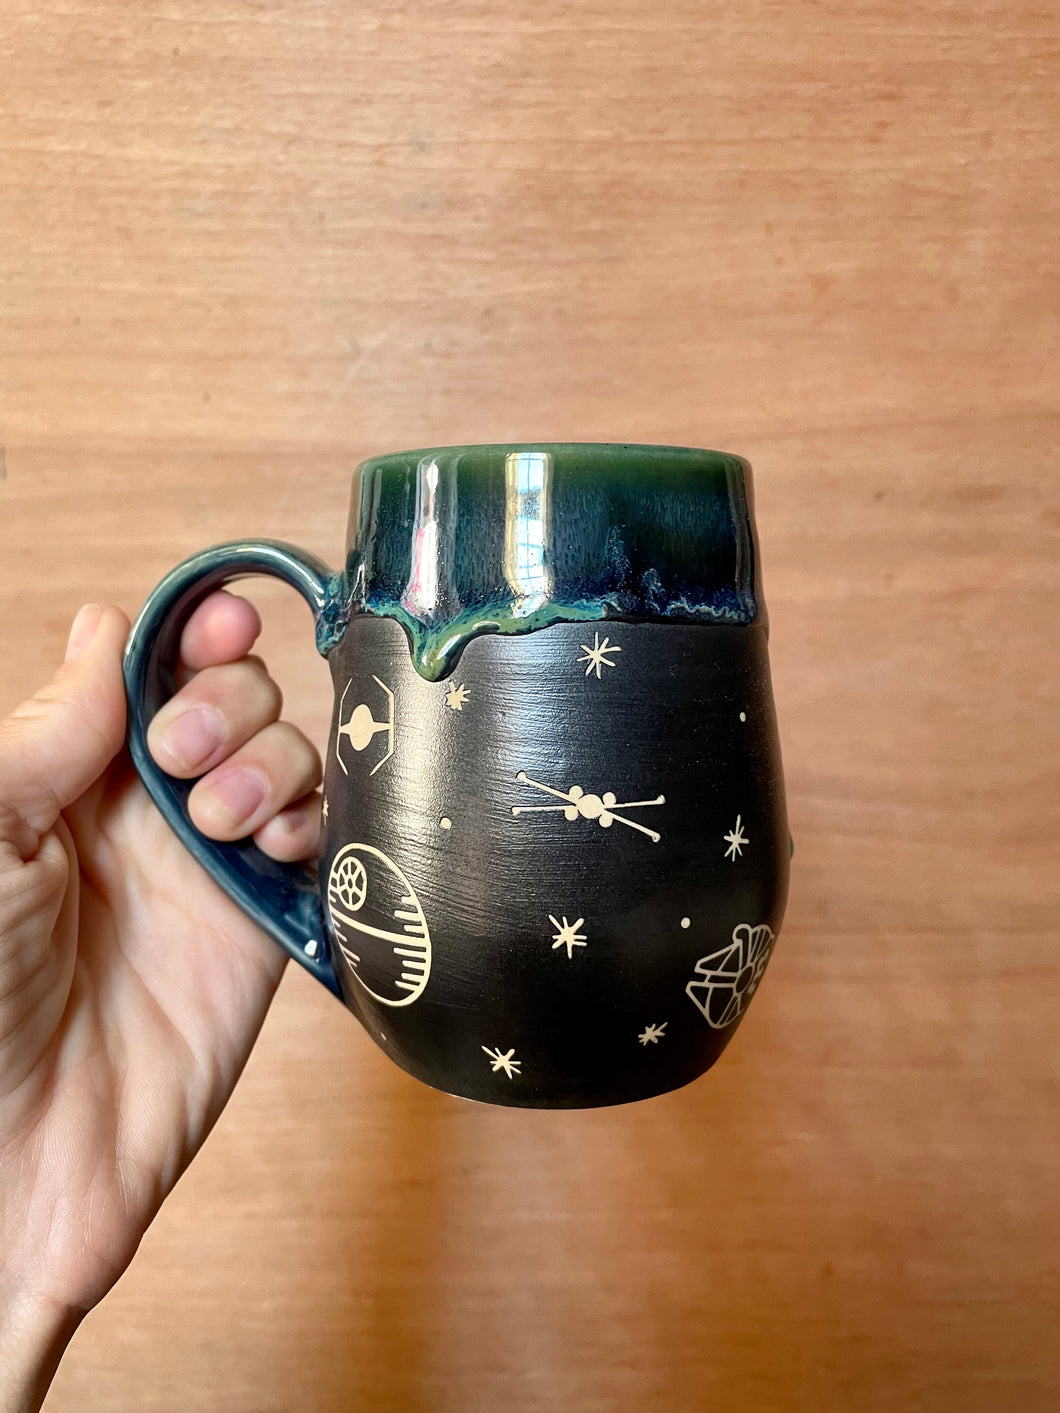 Blue/green Galaxy mug